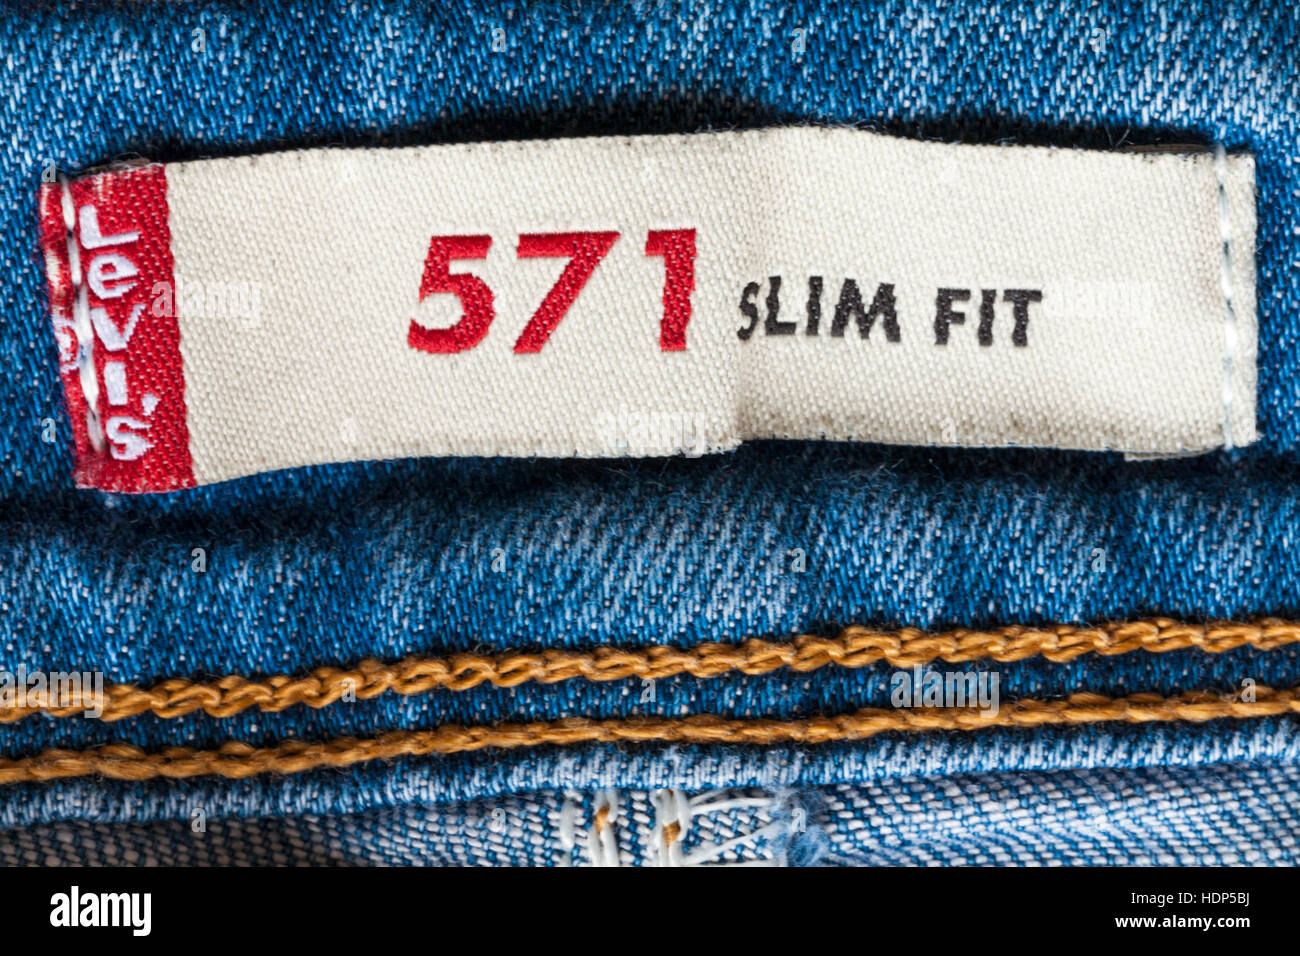 Levis 571 slim fit jeans dans l'étiquette Photo Stock - Alamy